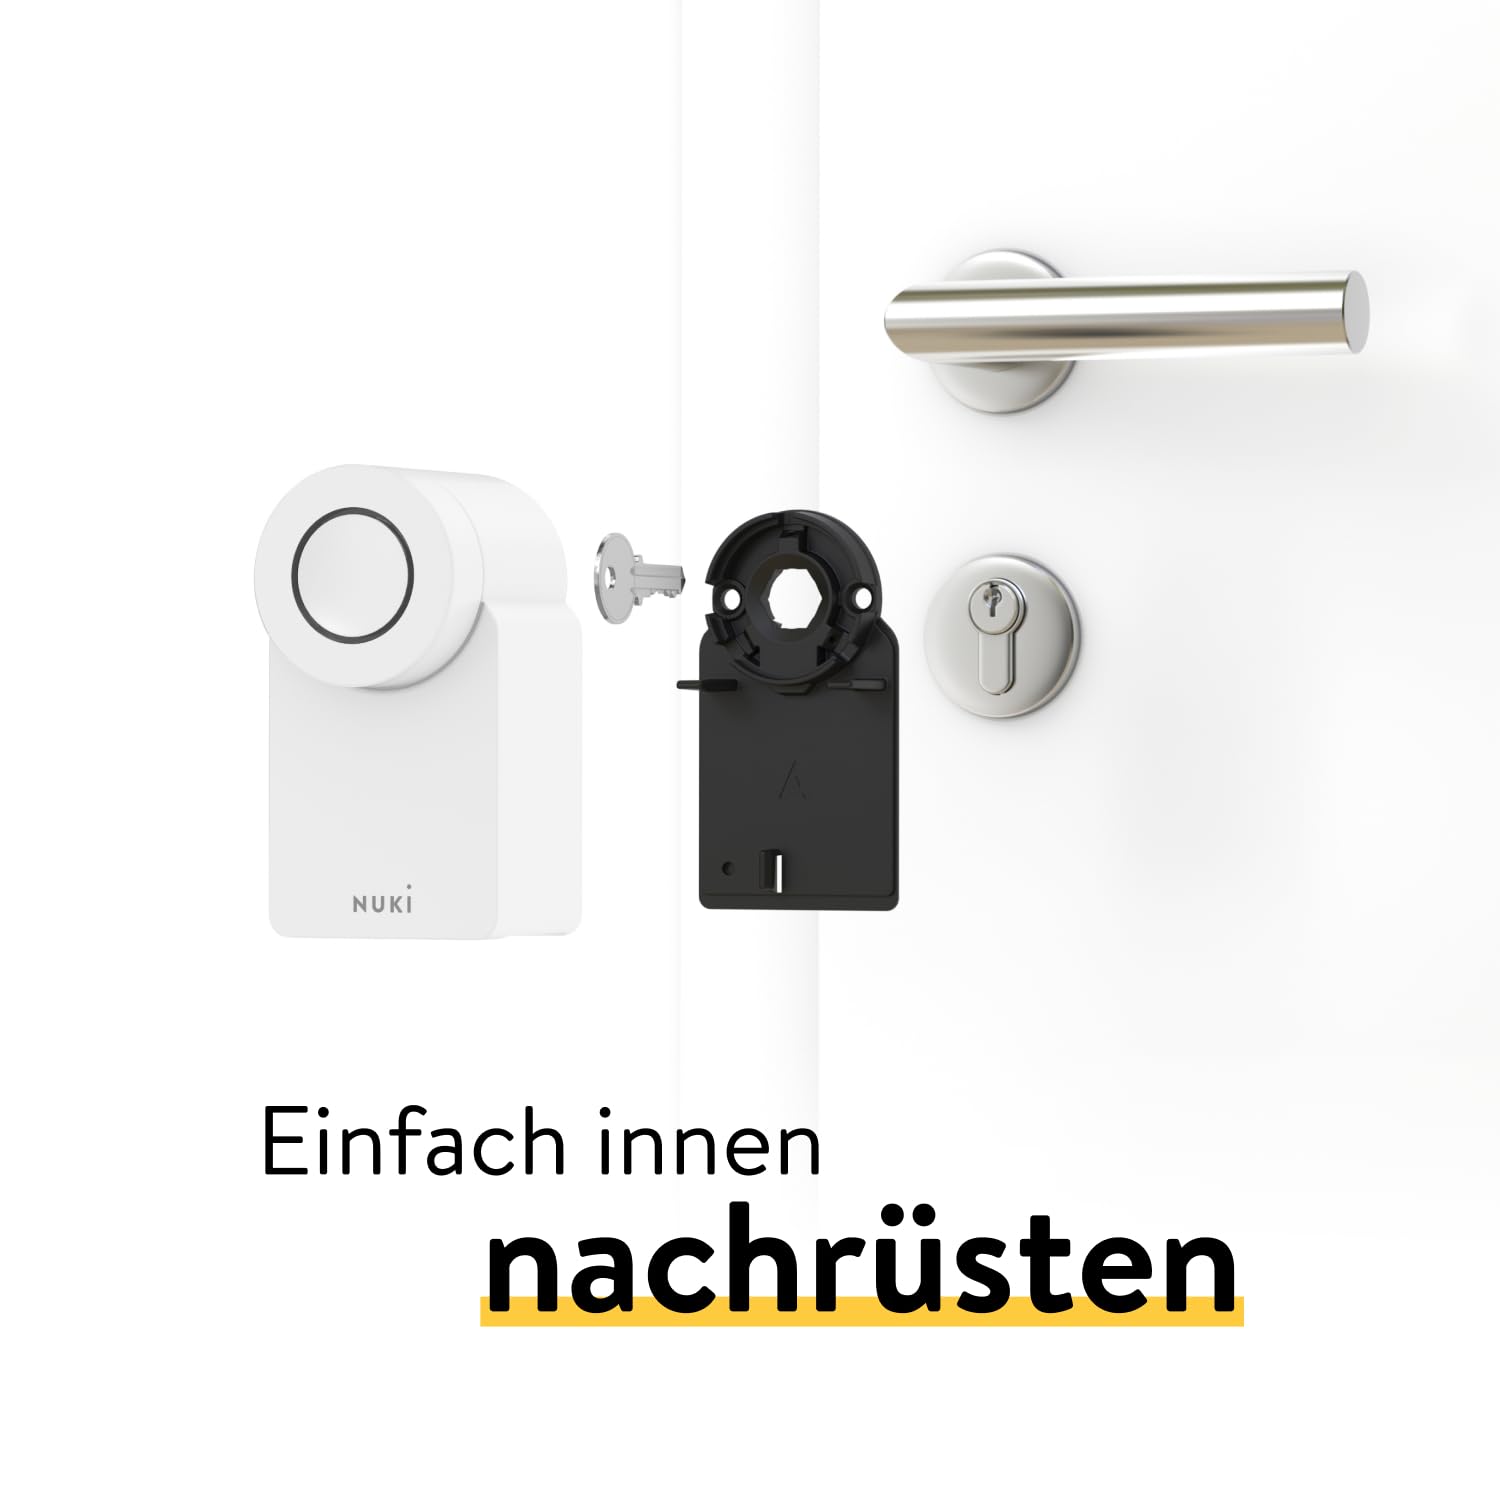 Nuki Smart Lock (4. Generation), smartes Türschloss mit Matter für schlüssellosen Zutritt ohne Umbau, elektronisches Türschloss macht das Smartphone zum Schlüssel, weiß